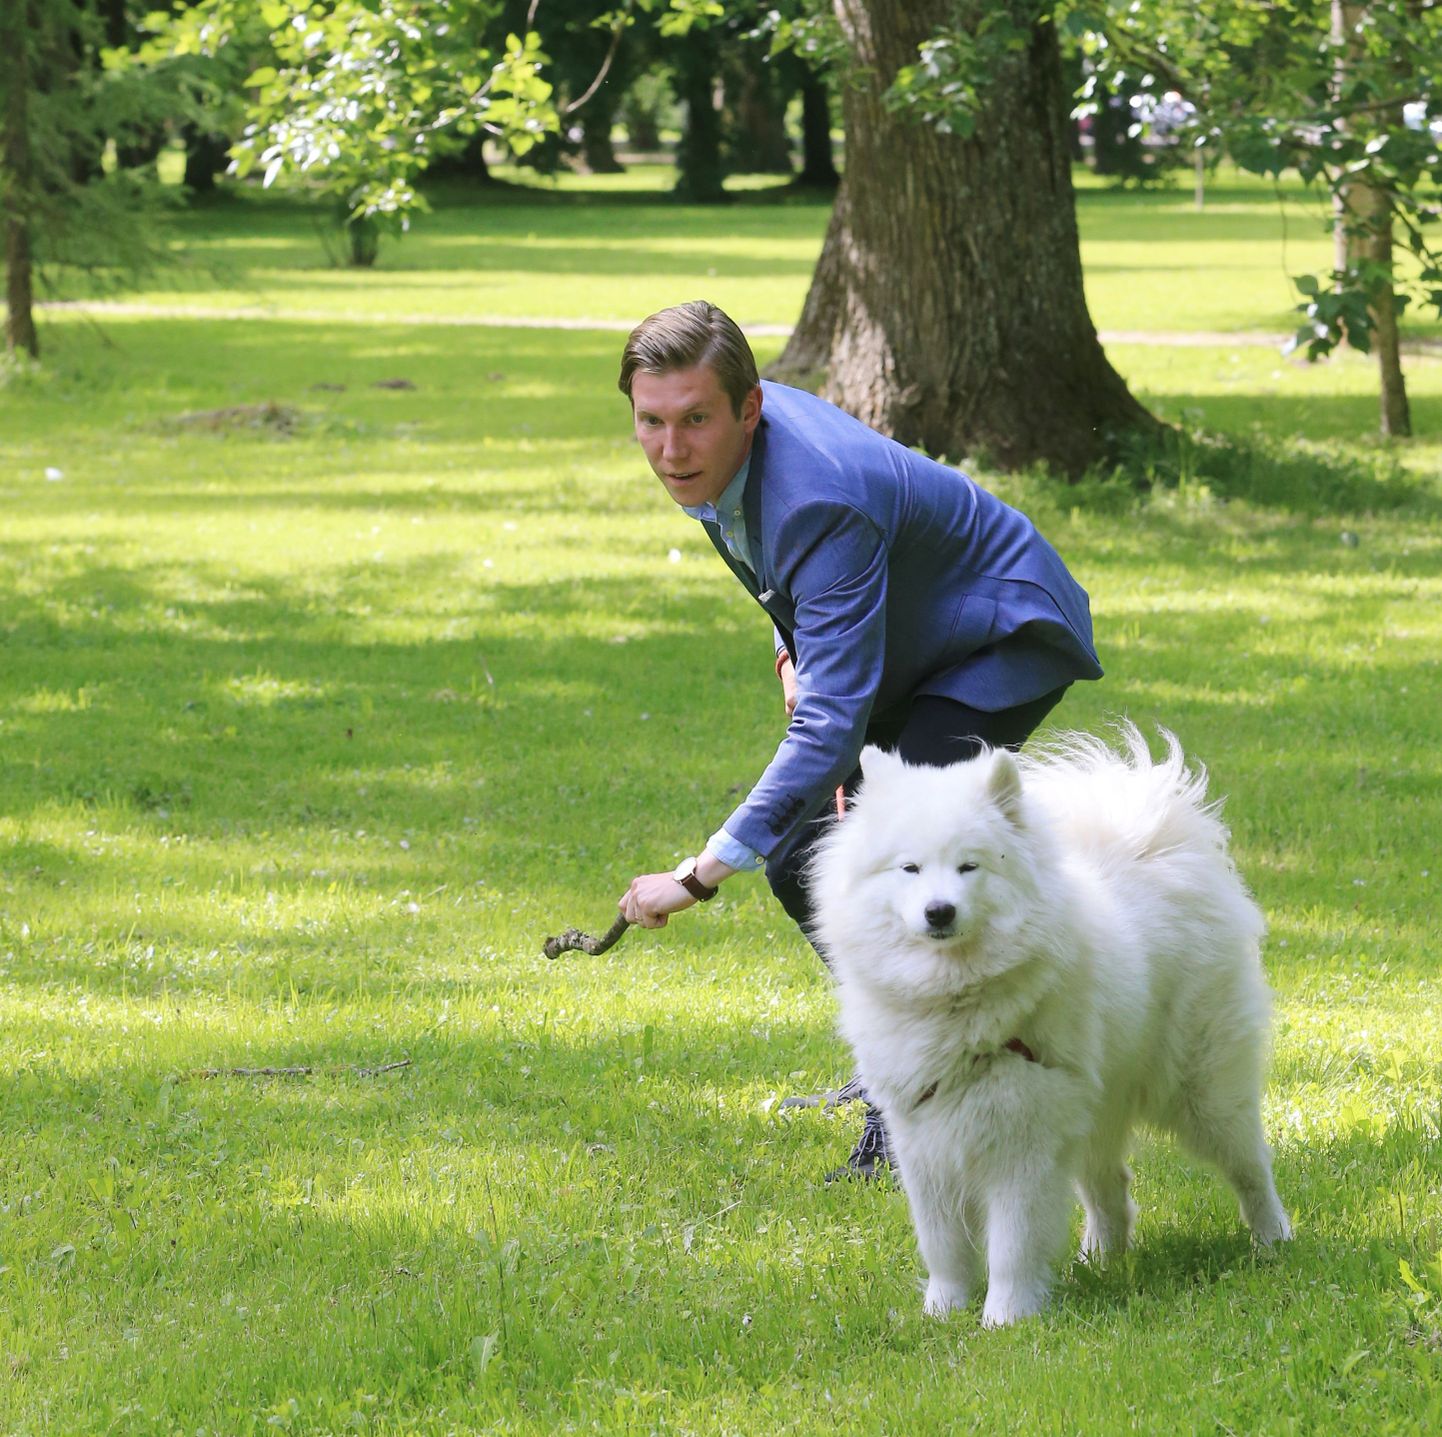 MTÜ Tartu Koertepargid üks asutajaid Mart Suurkask käis Tartu Postimehe palvel koos oma 2,5-aastase valge samojeedi koera Lunaga peagi valmivat Tähtvere koerteparki uudistamas.